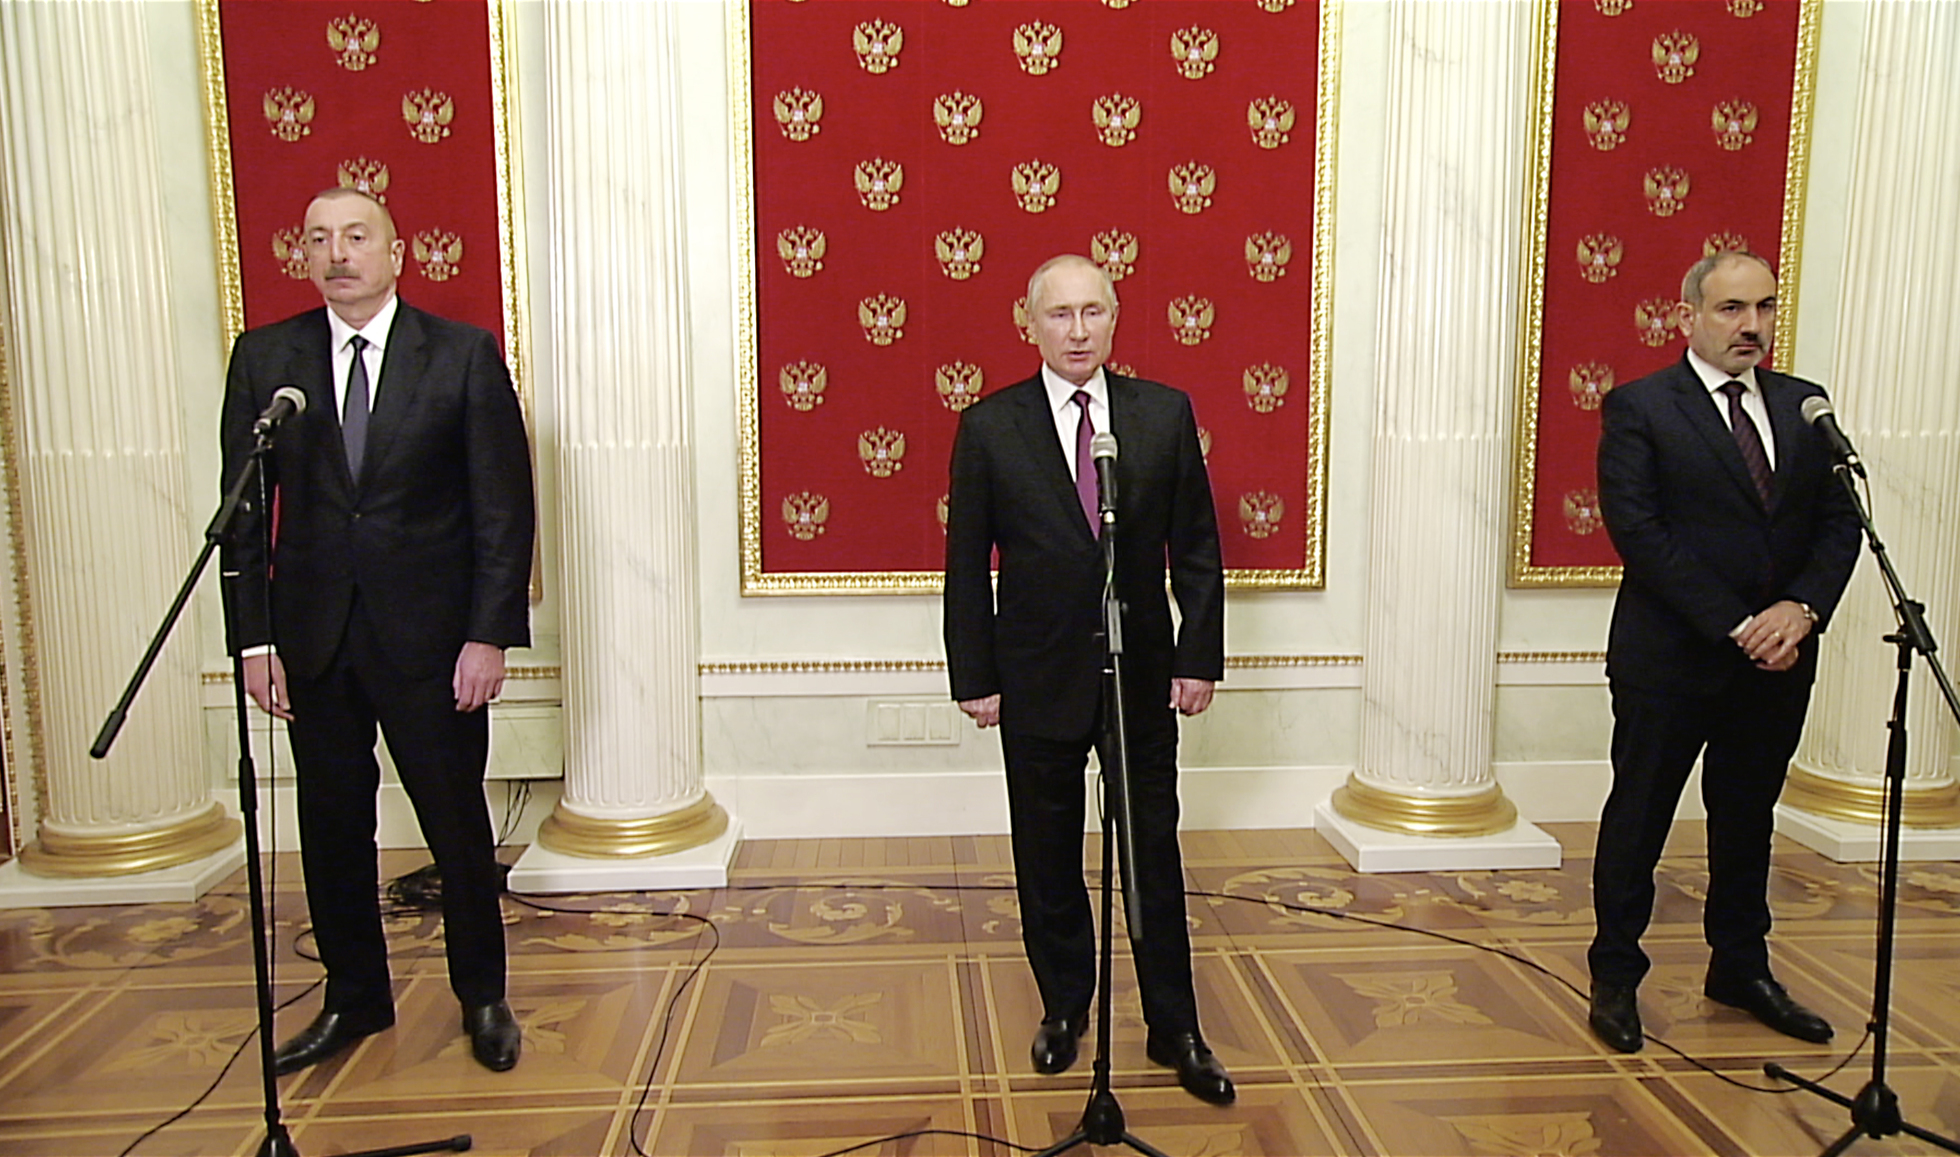 Əliyev, Putin və Paşinyan Moskvada niyə görüşdülər? - “Kommersant”